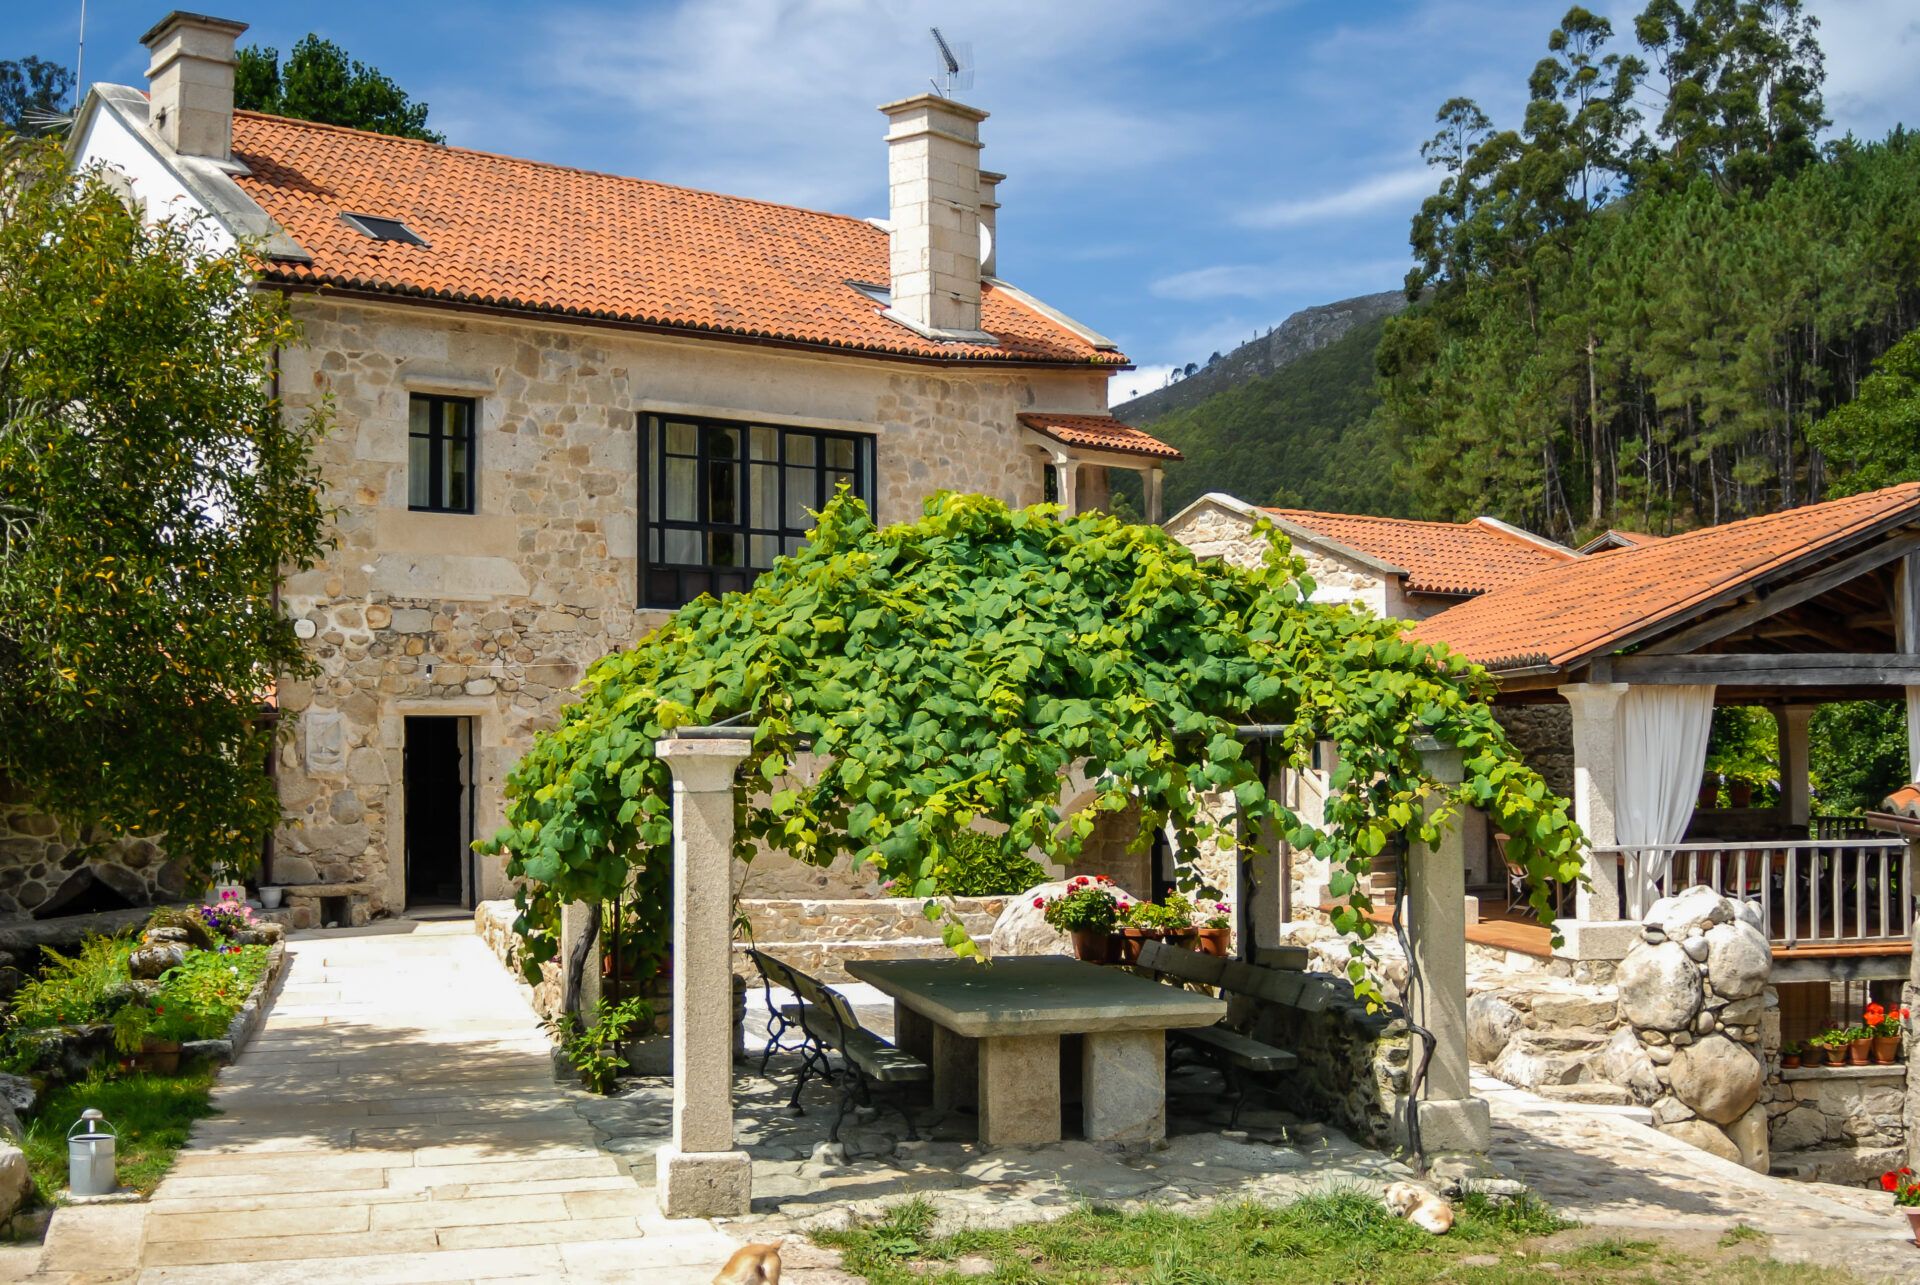 Hoteles rurales en Galicia